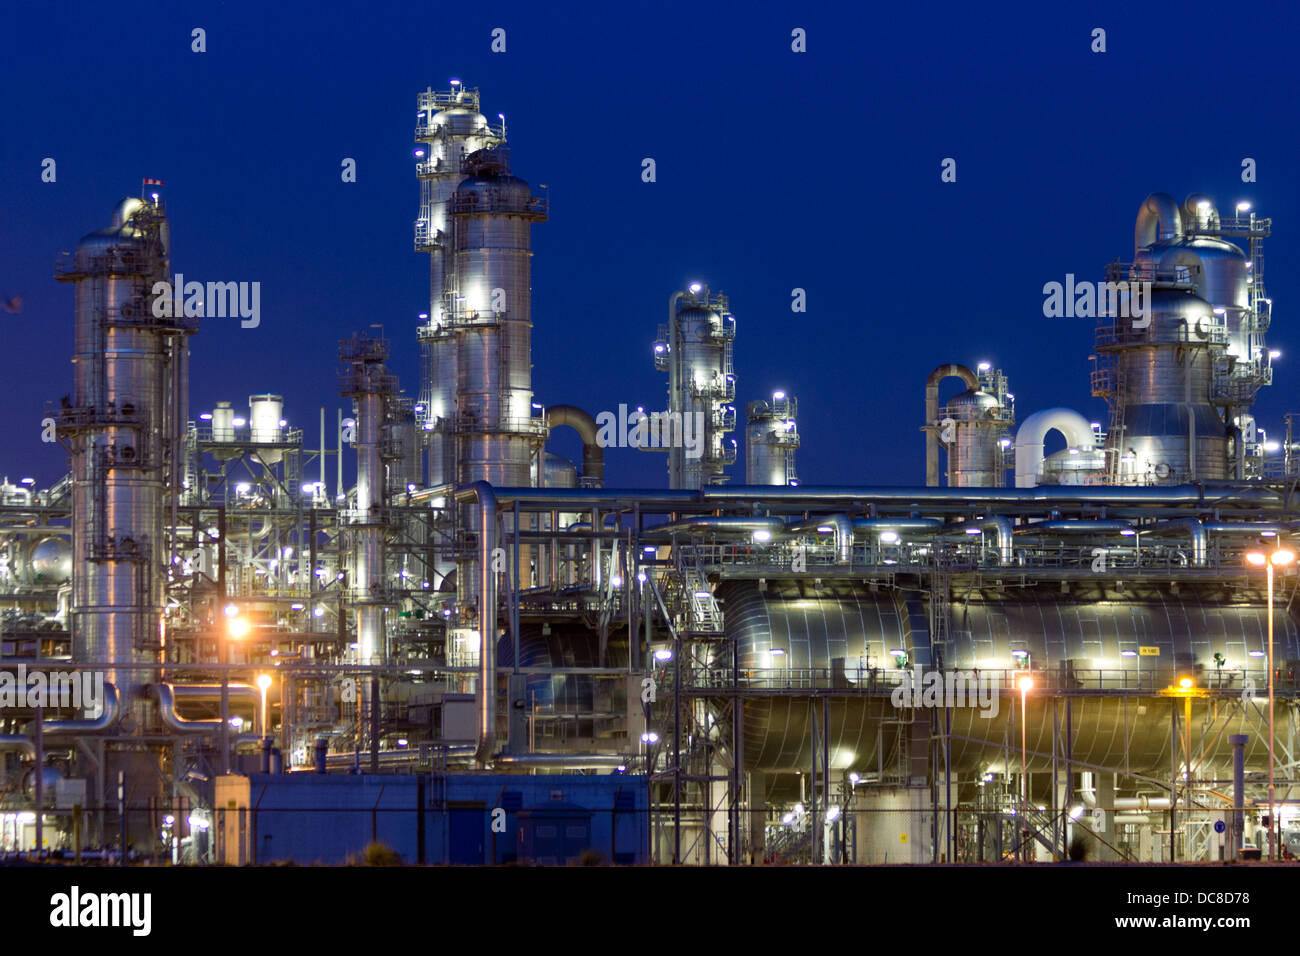 La petrolchimica impianto industriale di notte Foto Stock